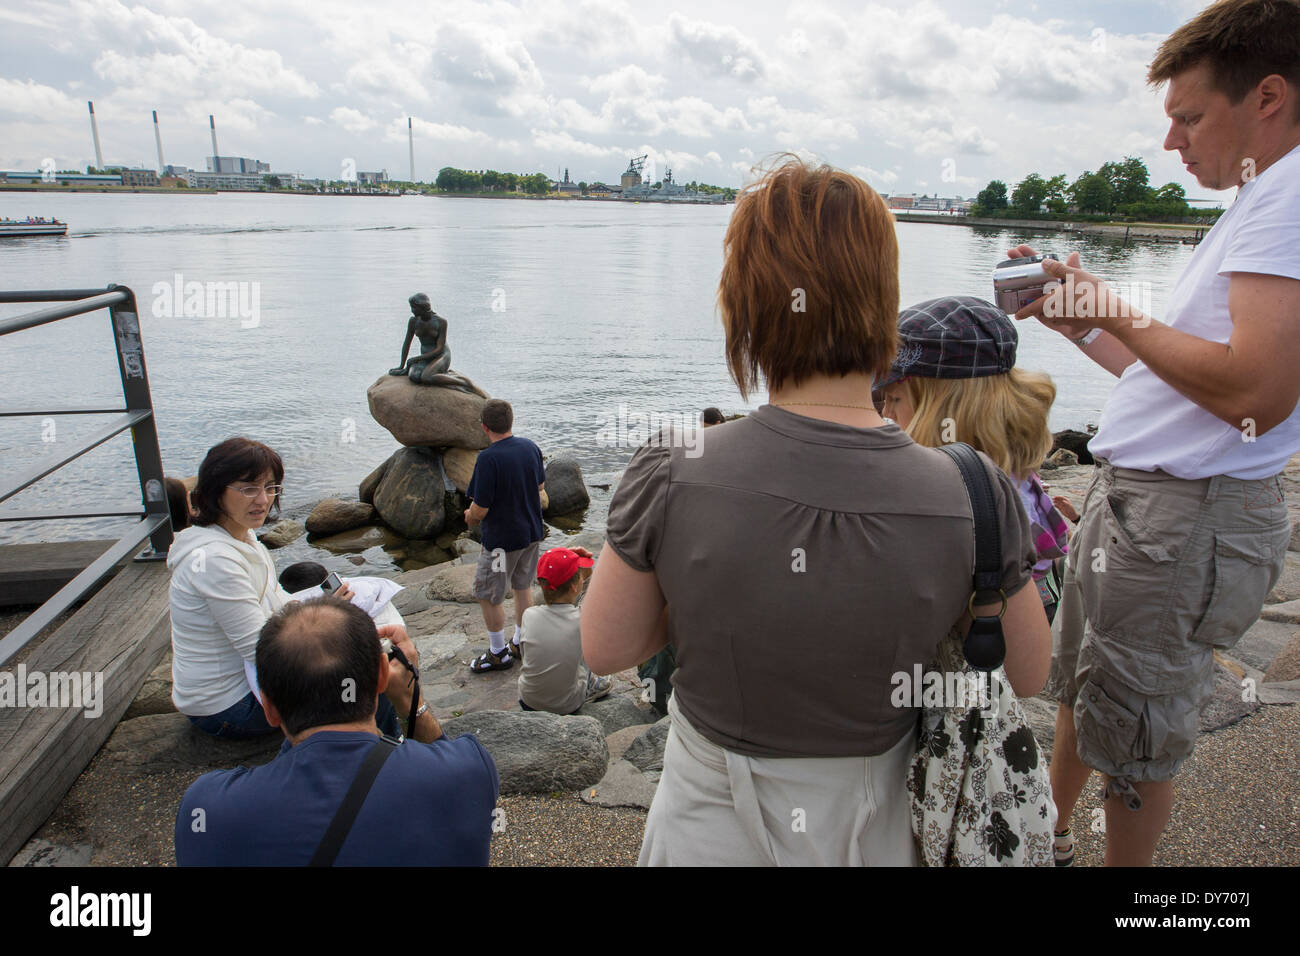 Turistas mirando la atracción turística de Copenhague, la Sirenita, 'Den Lille Havfrue'. Foto de stock